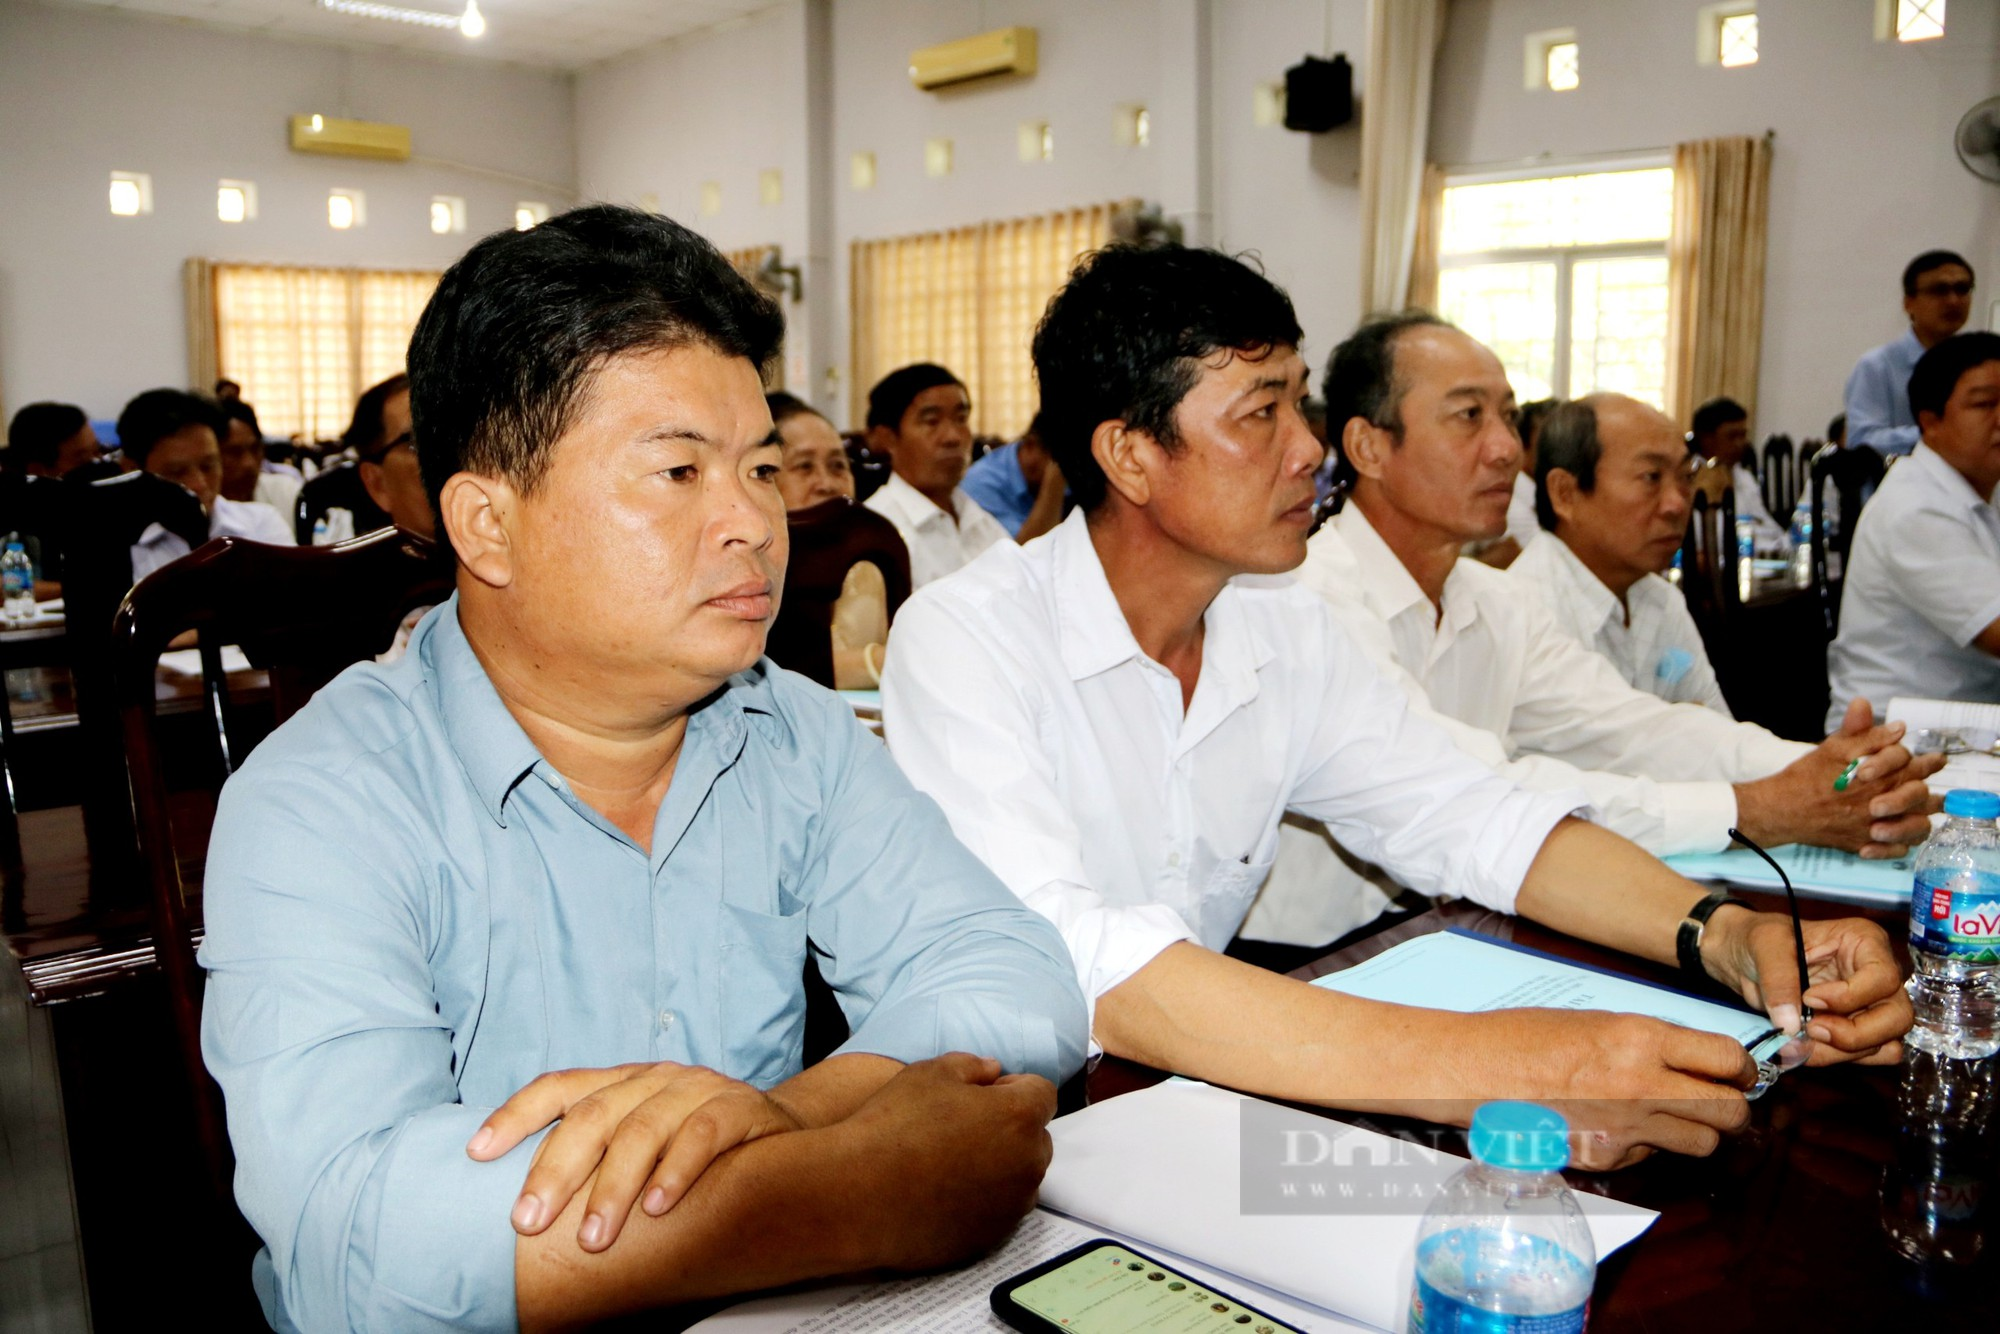 Hội Nông dân tỉnh An Giang mời chuyên gia bàn giải pháp thúc đẩy liên kết chuỗi giá trị nông sản - Ảnh 4.